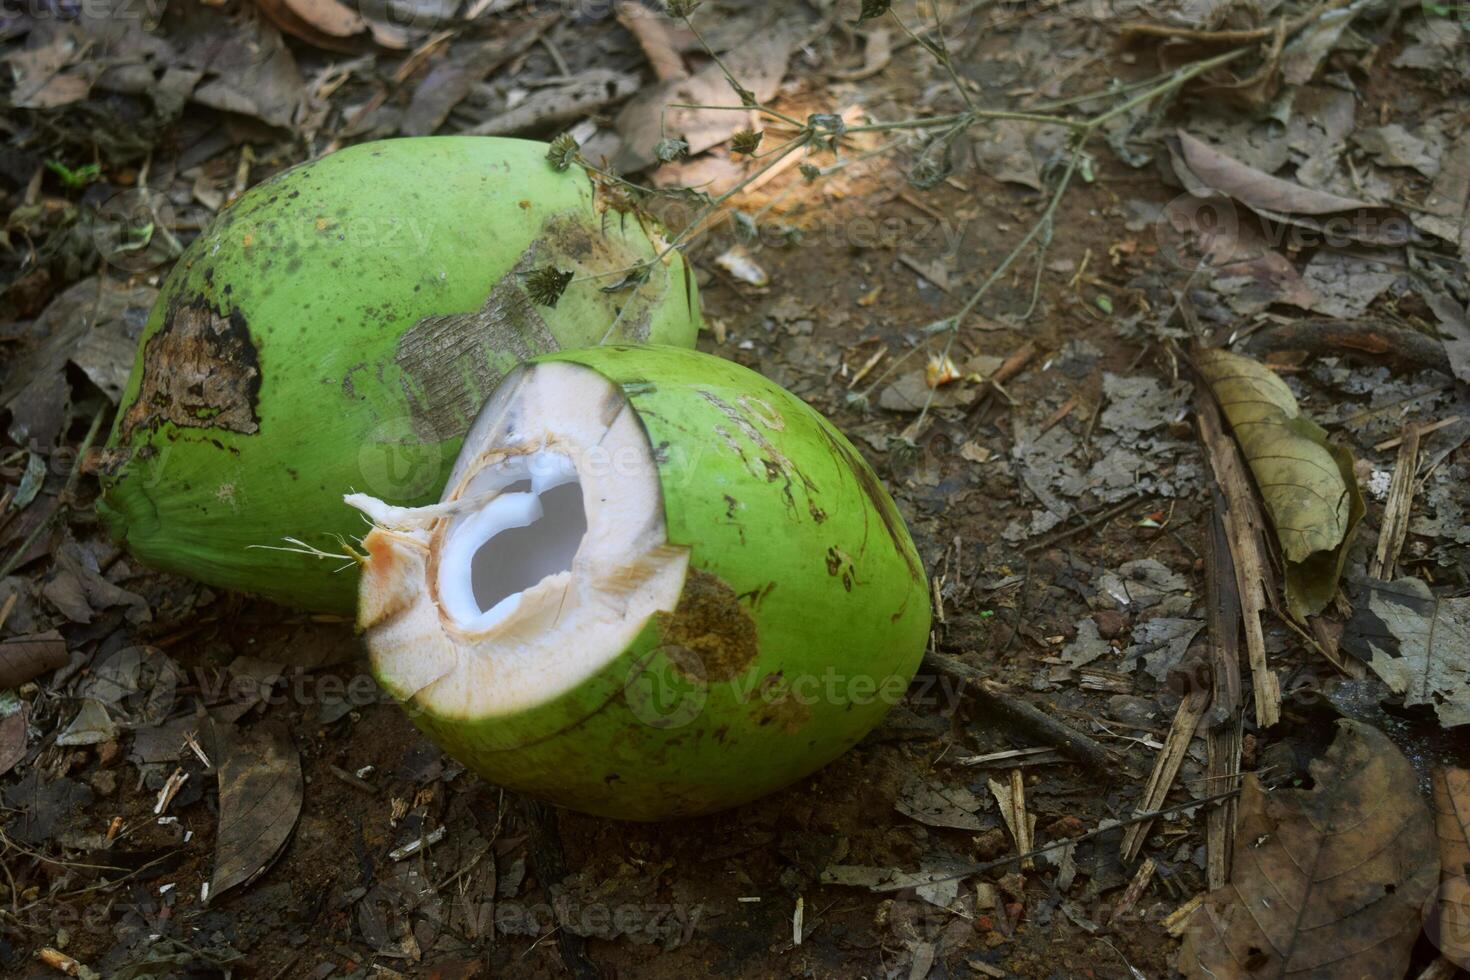 dos joven pelado verde cocos en un jardín foto